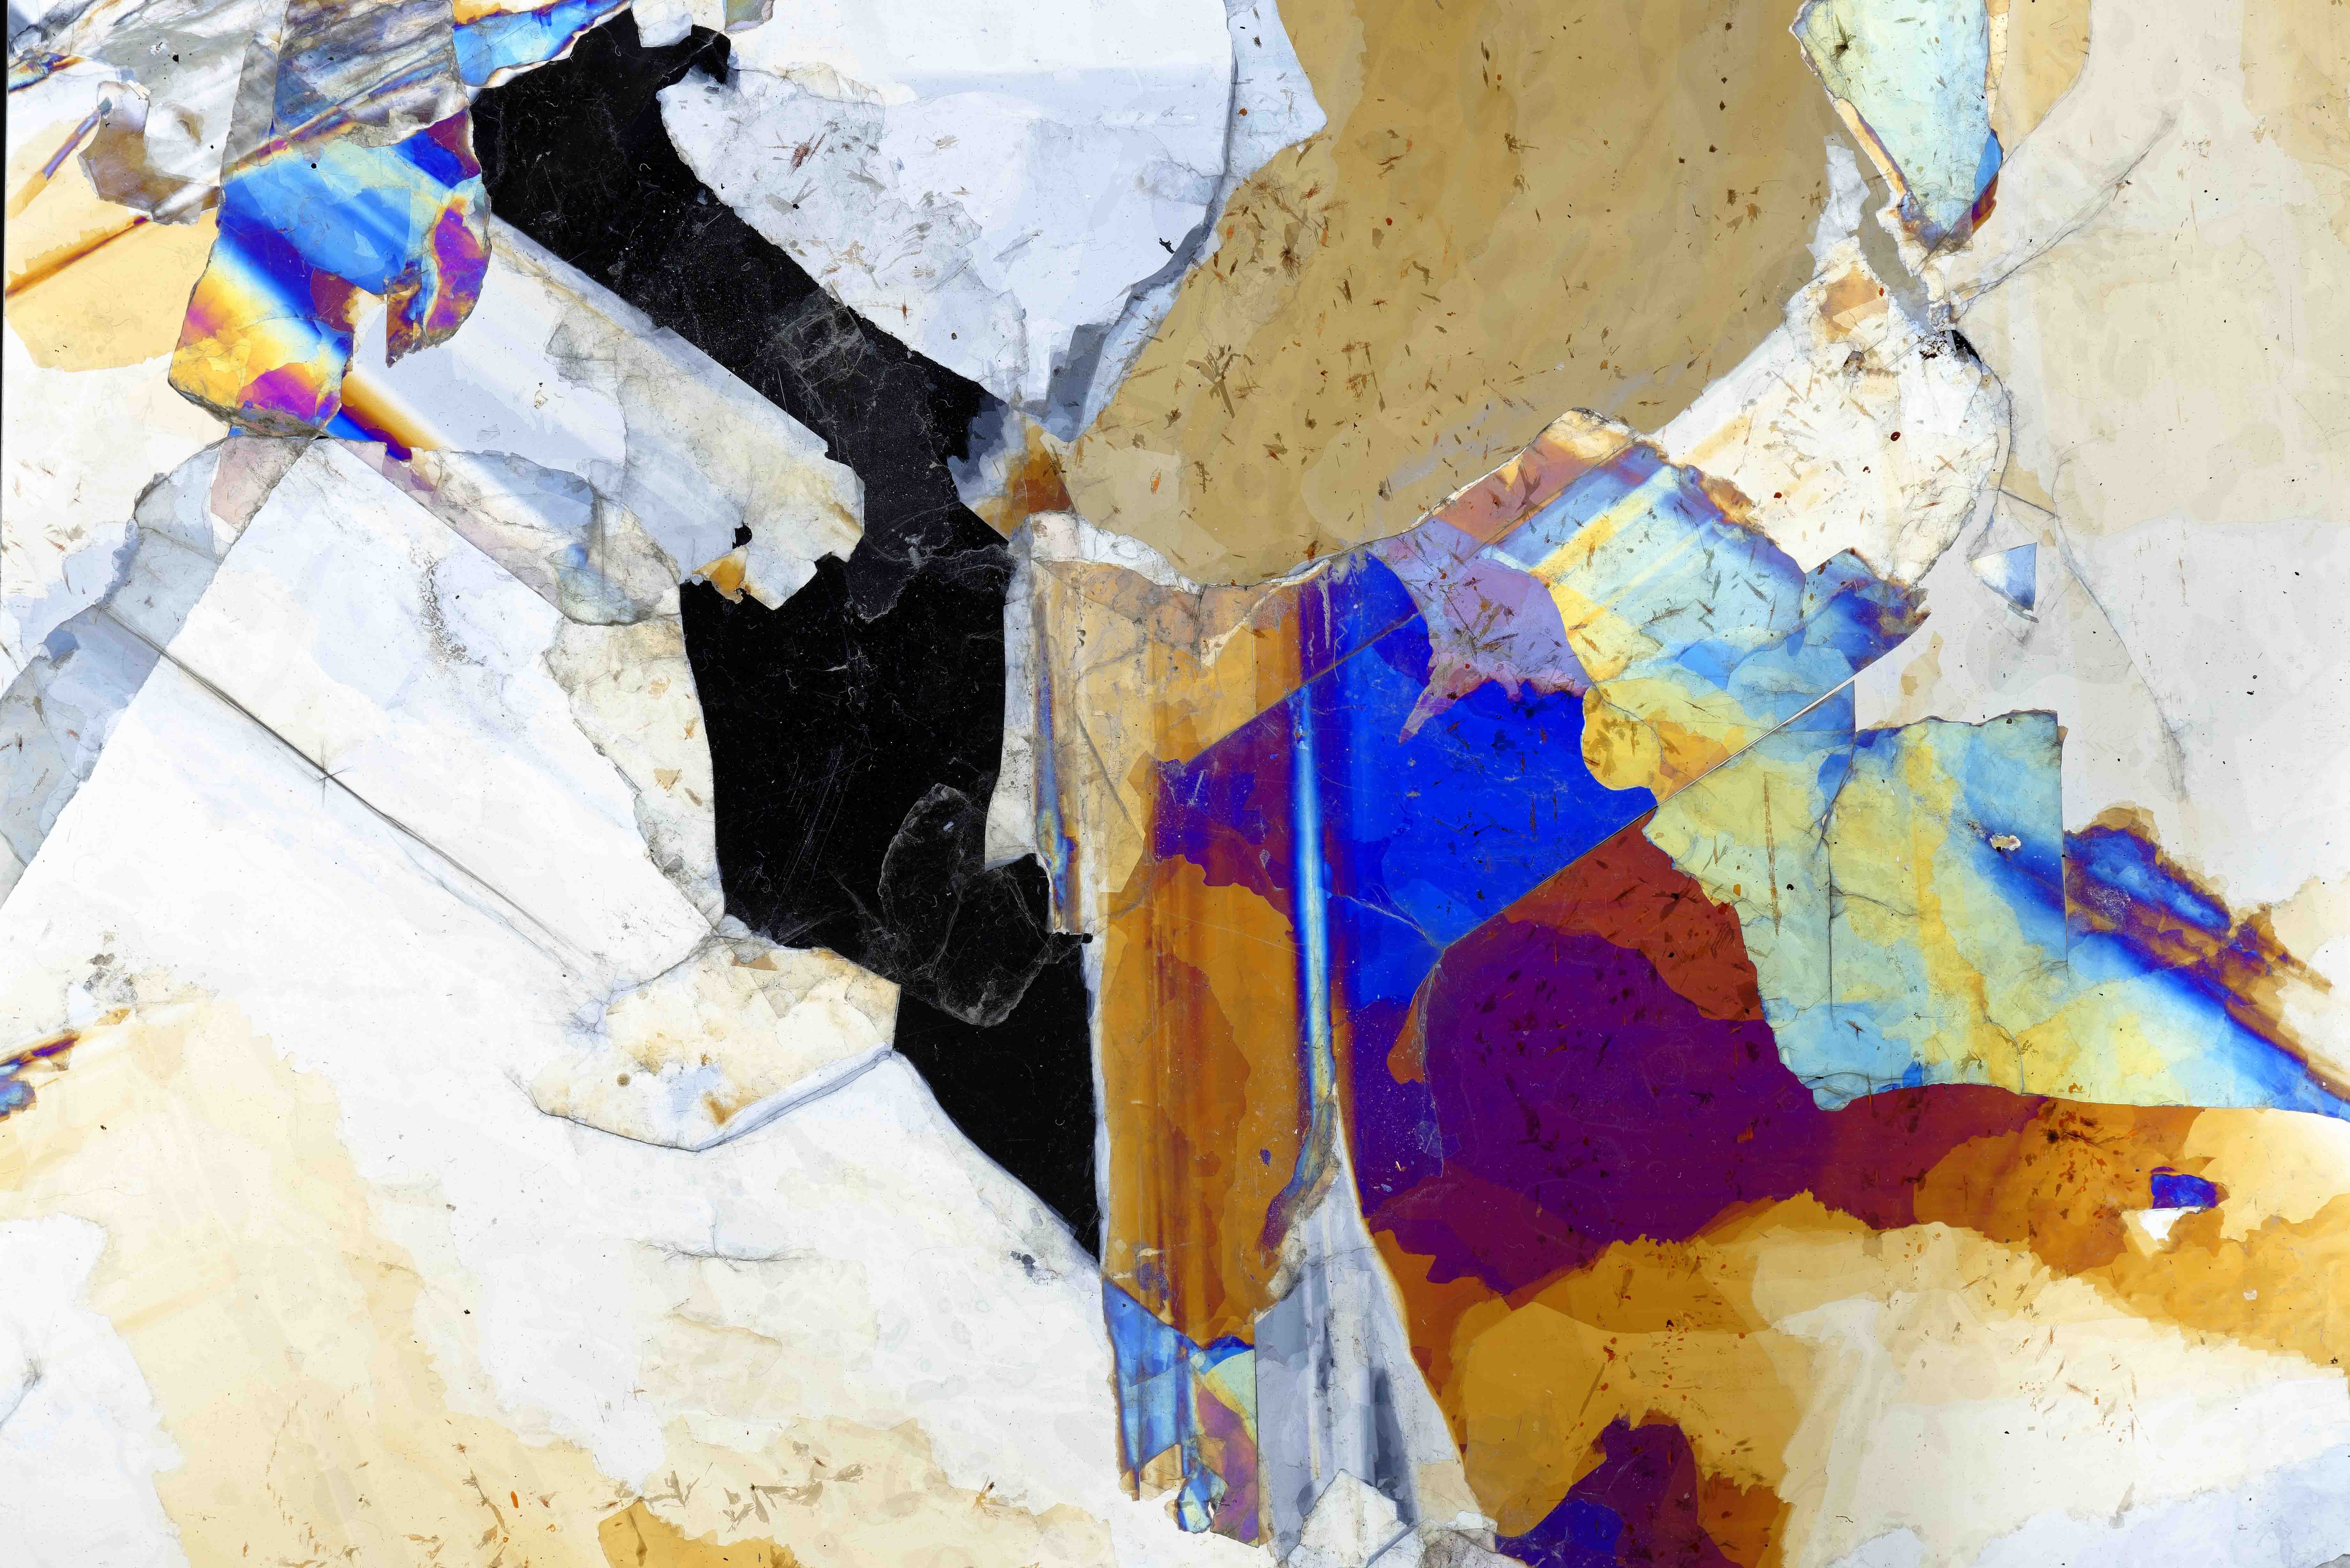 Détail d'une oeuvre de Léa Barbazanges faisant apparaître des cristaux en gros plan de couleurs différentes (bleu, marron, noir, jaune...)